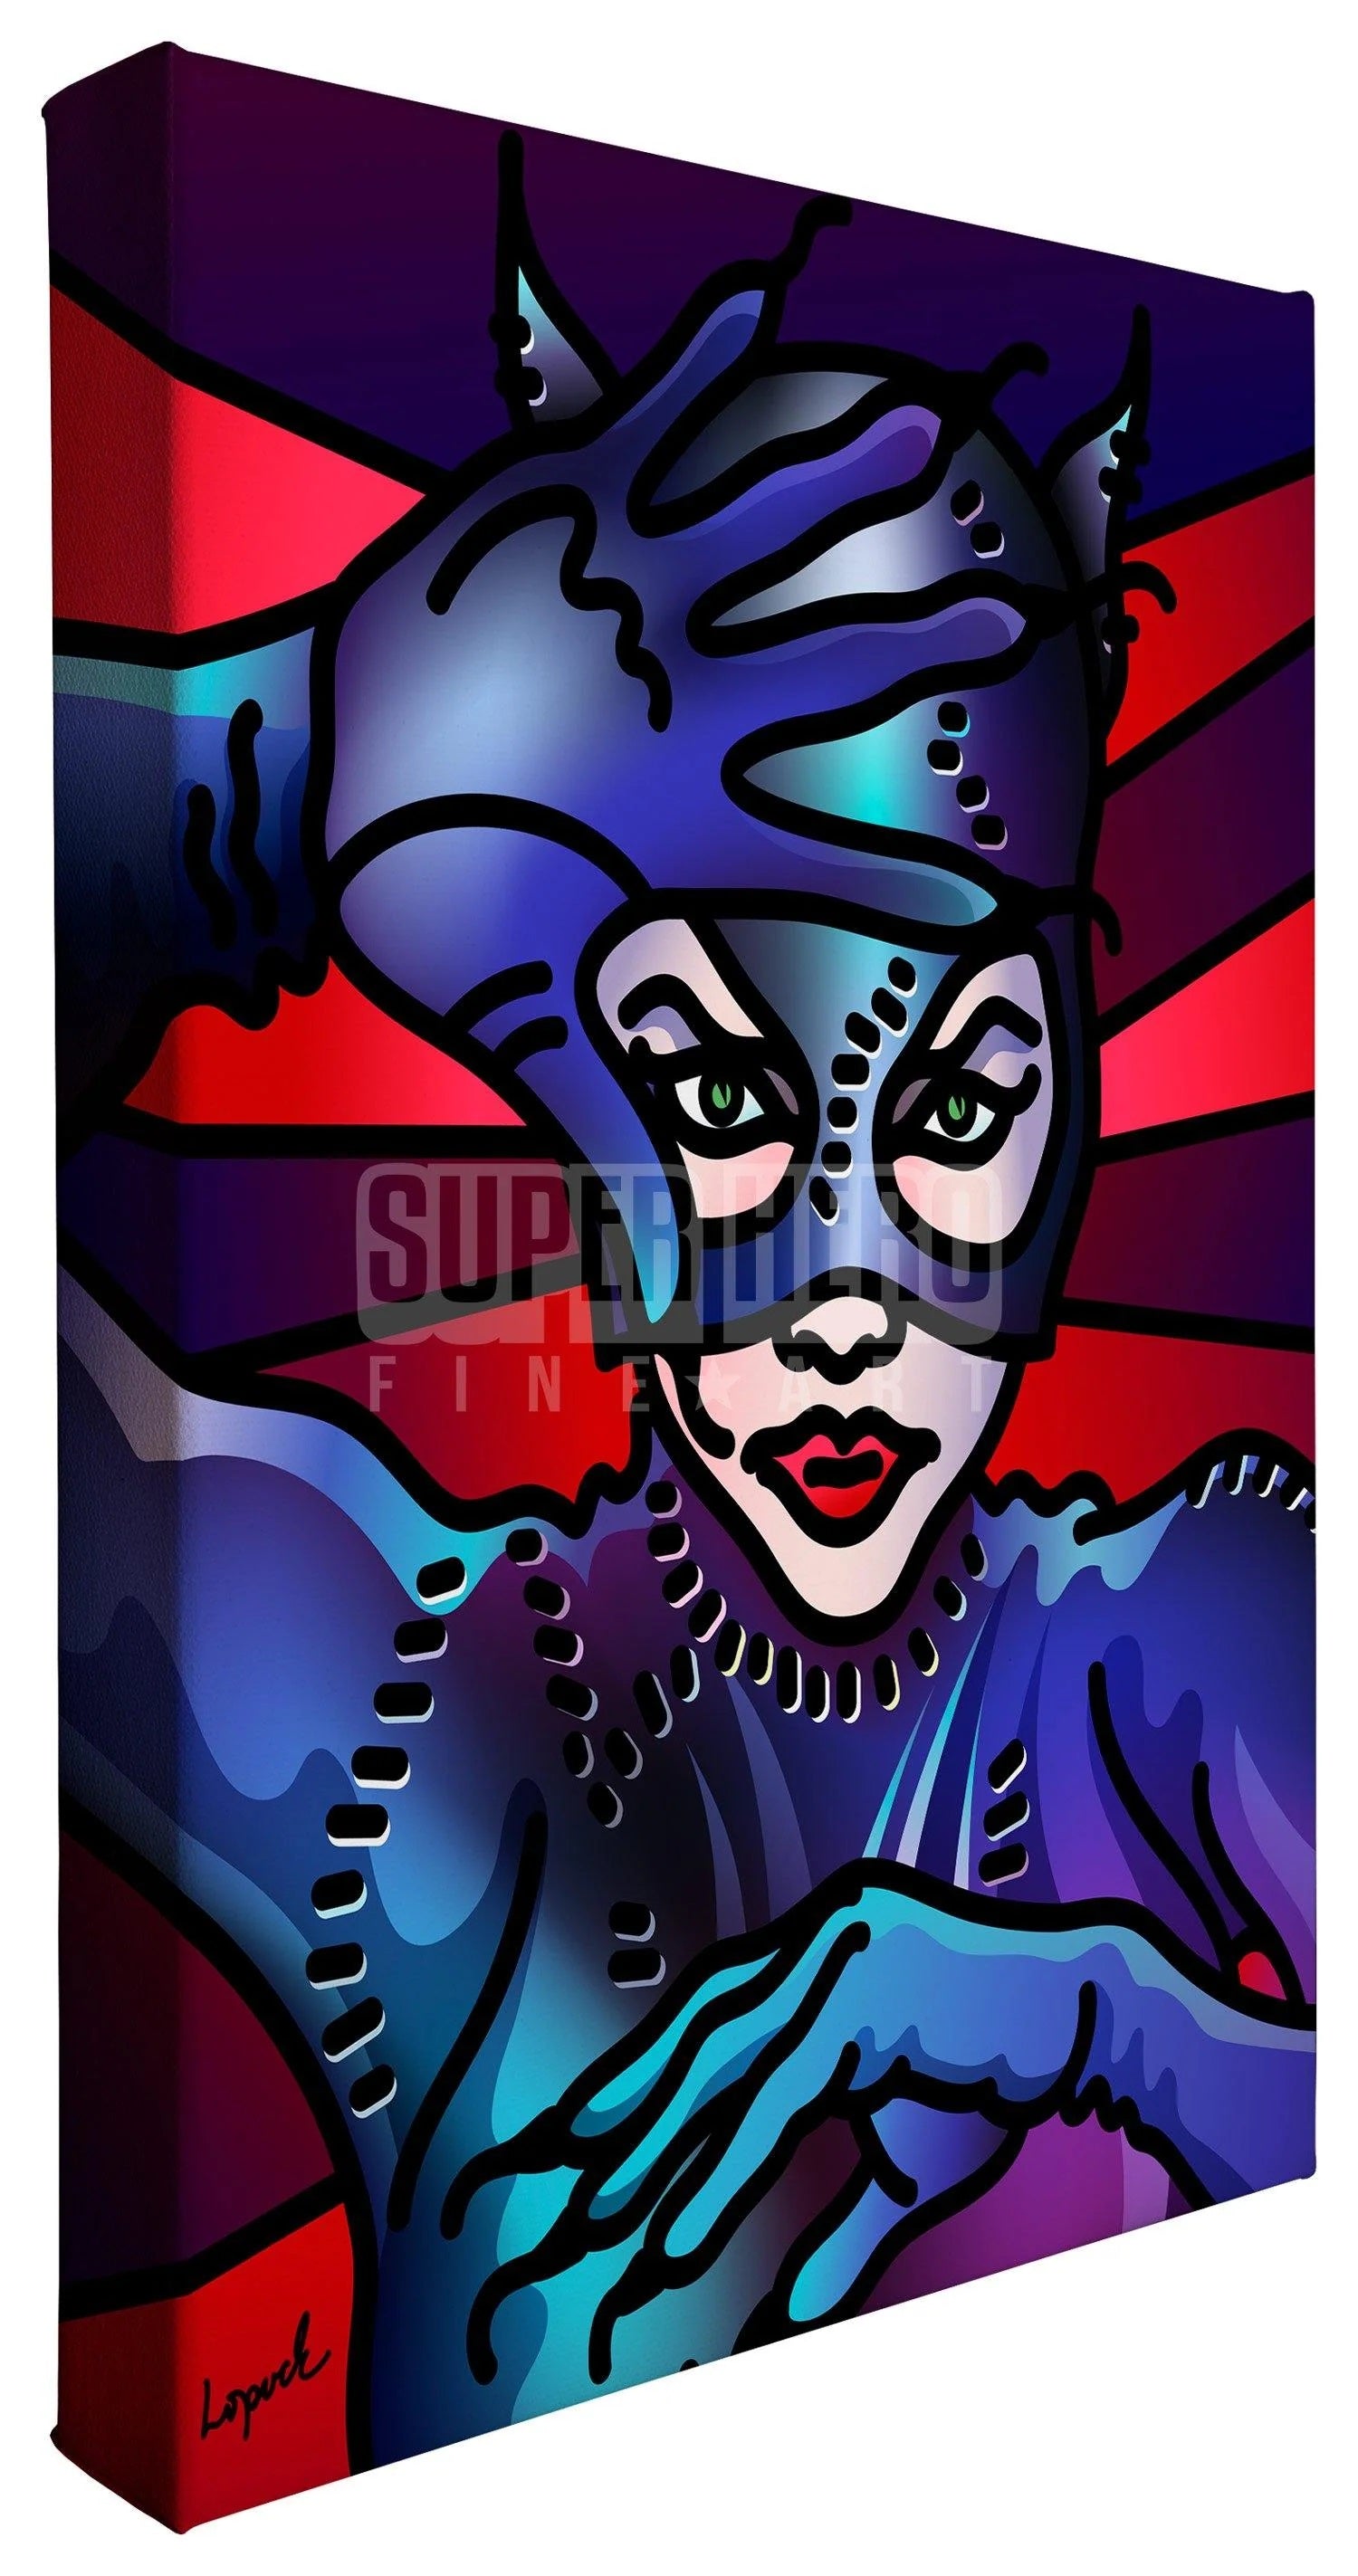 A vibrant portrait the iconic DC Comics - Catwoman